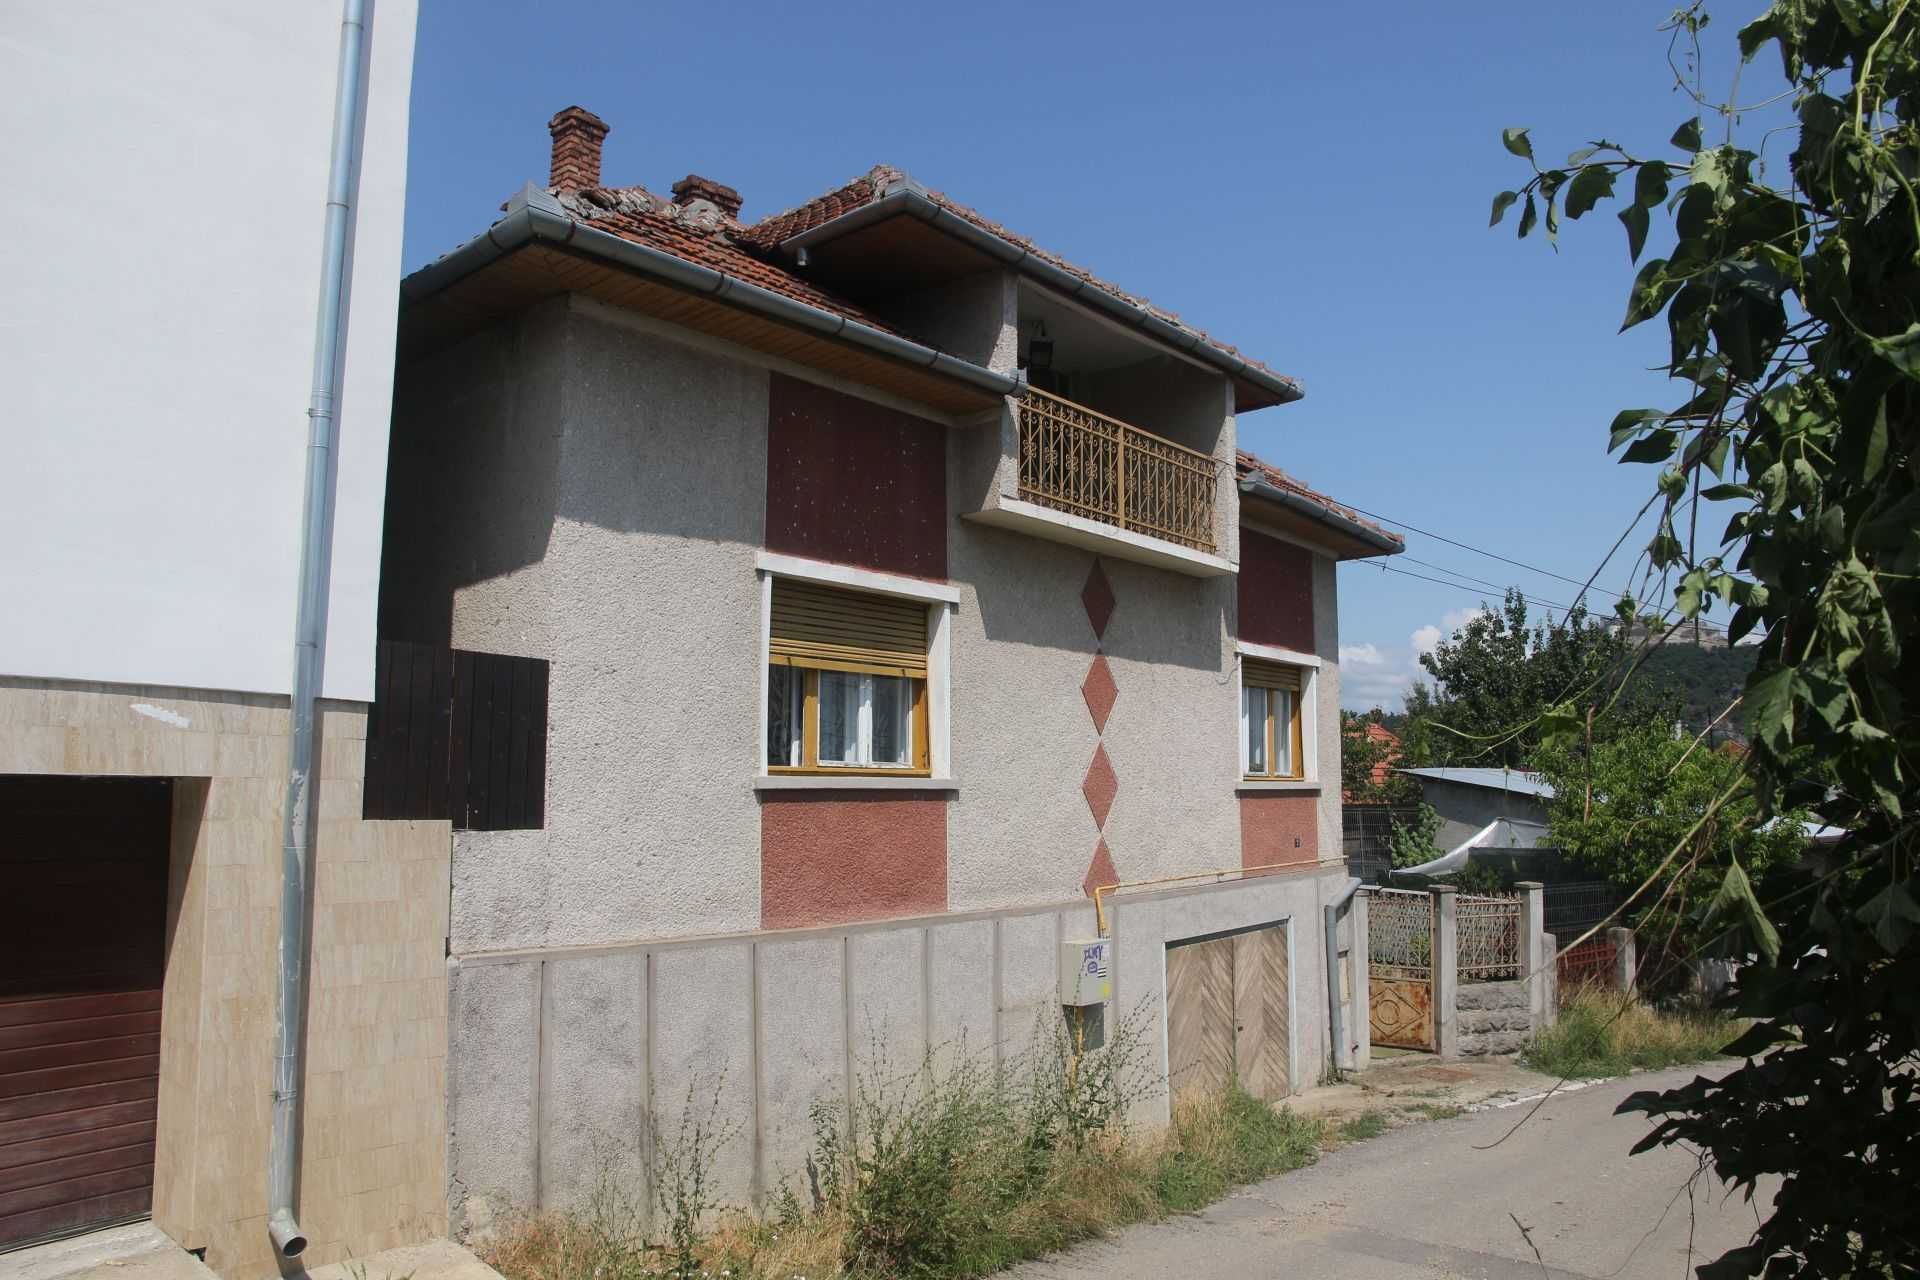 Casa de vanzare in Deva, strada Coziei